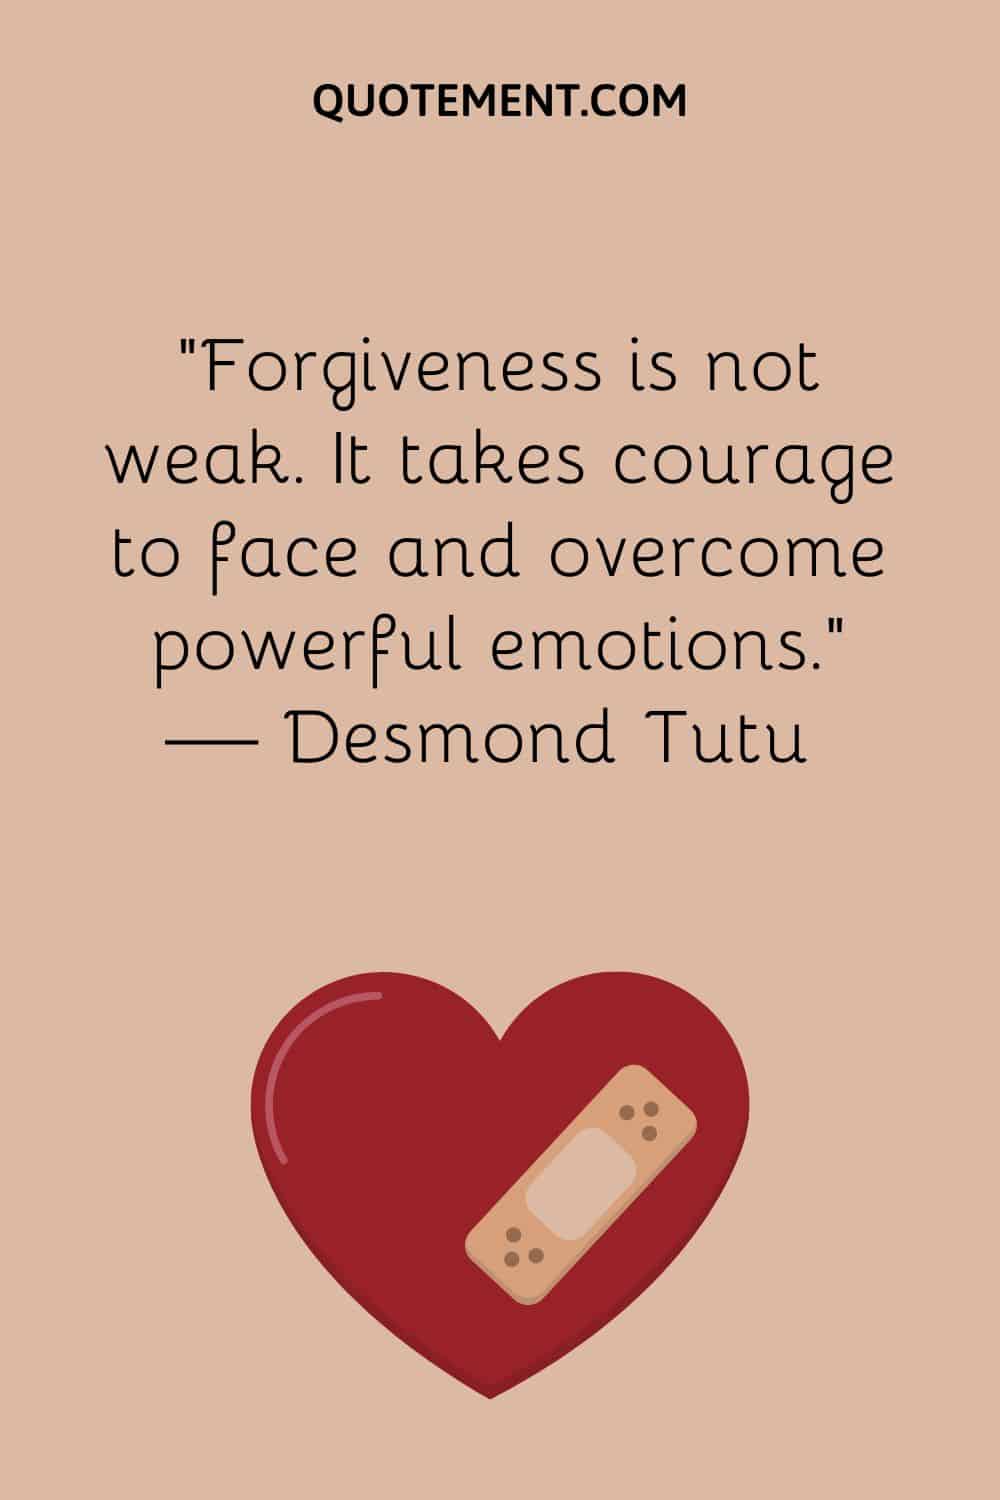 Forgiveness is not weak.